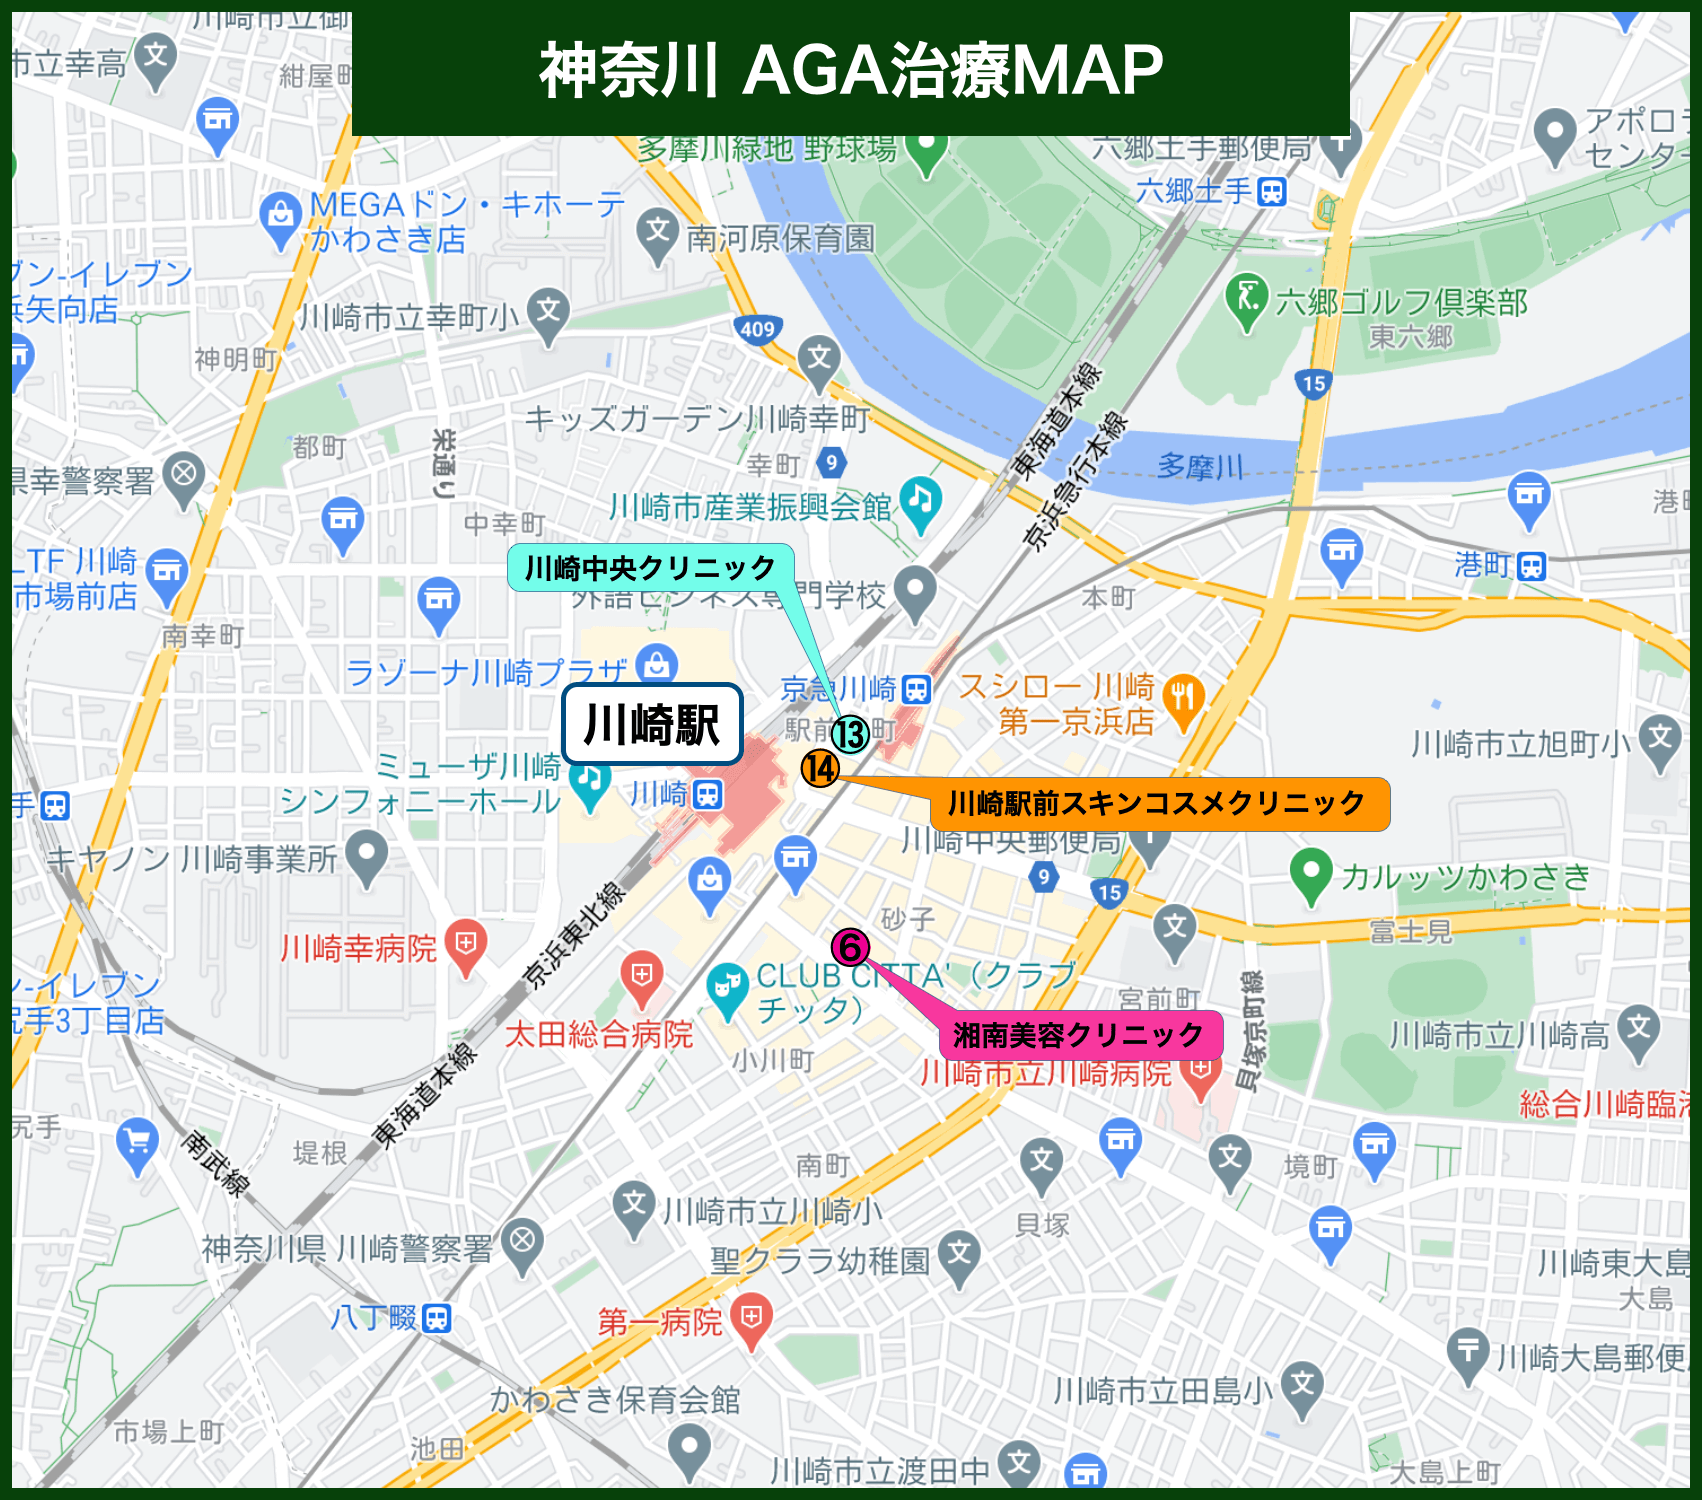 神奈川AGA治療MAP